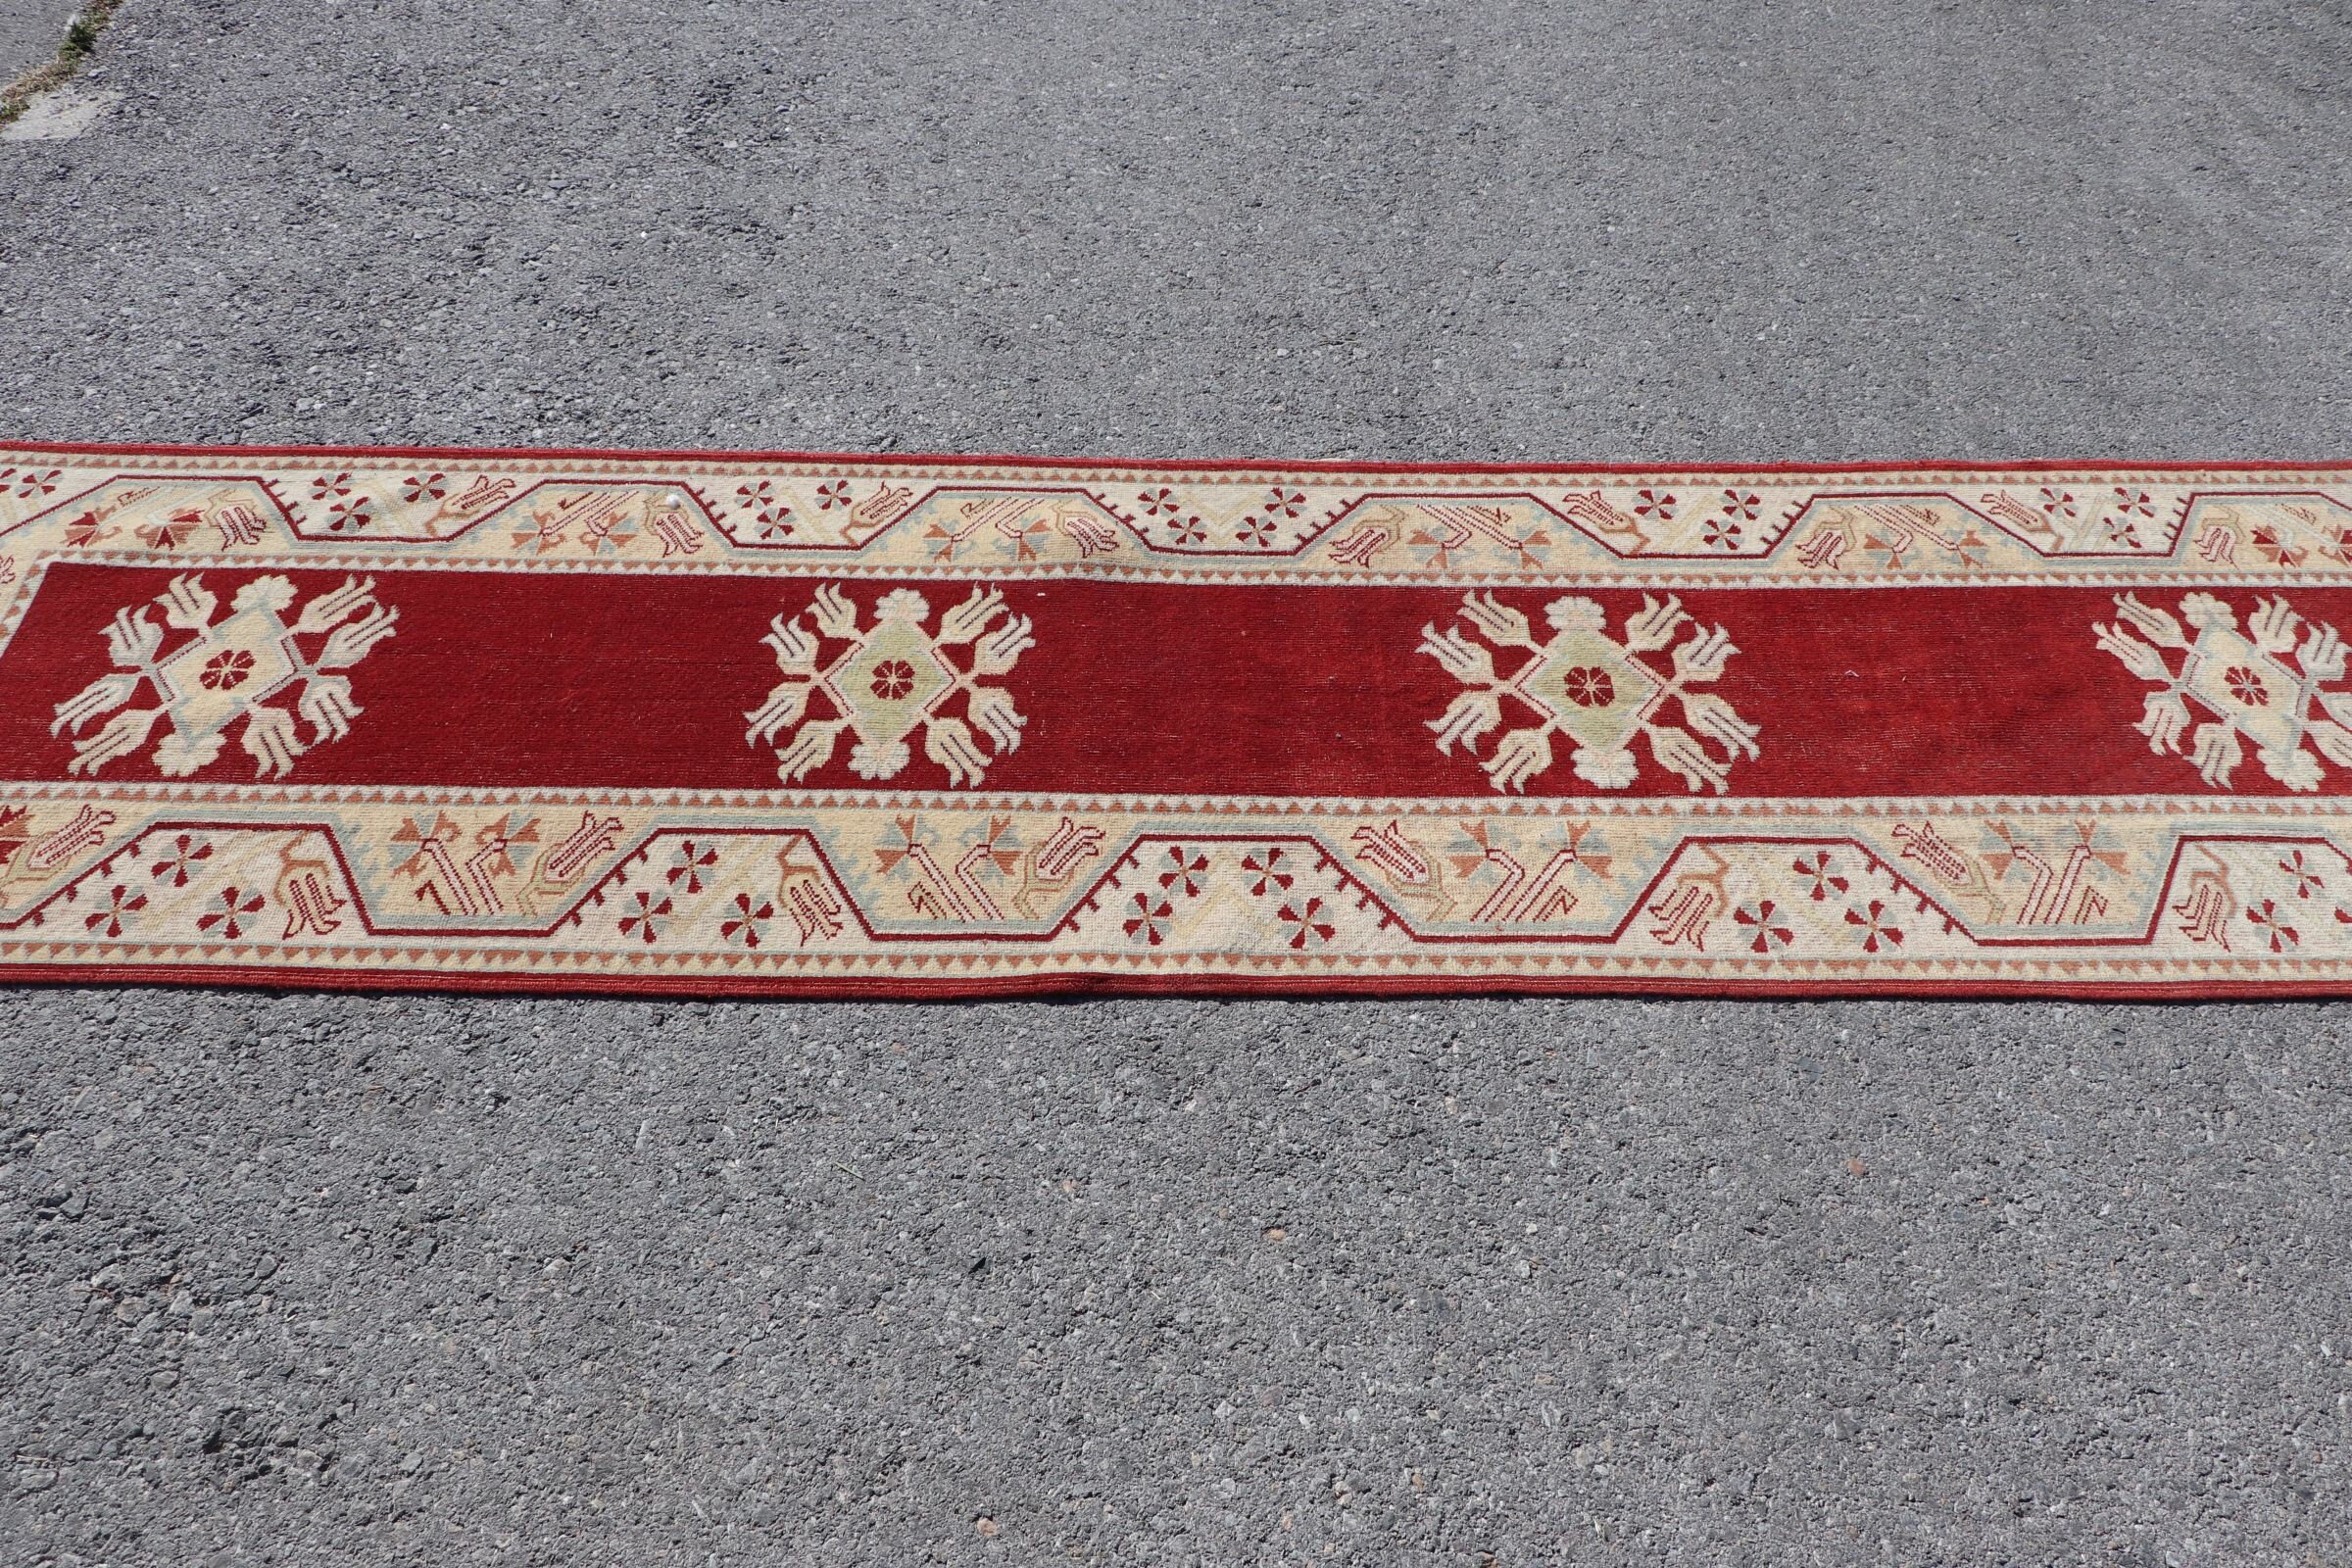 Oriental Rug, Kitchen Rug, Rugs for Corridor, Red Moroccan Rug, Vintage Rug, Turkish Rugs, 2.5x9.3 ft Runner Rug, Stair Rugs, Moroccan Rug